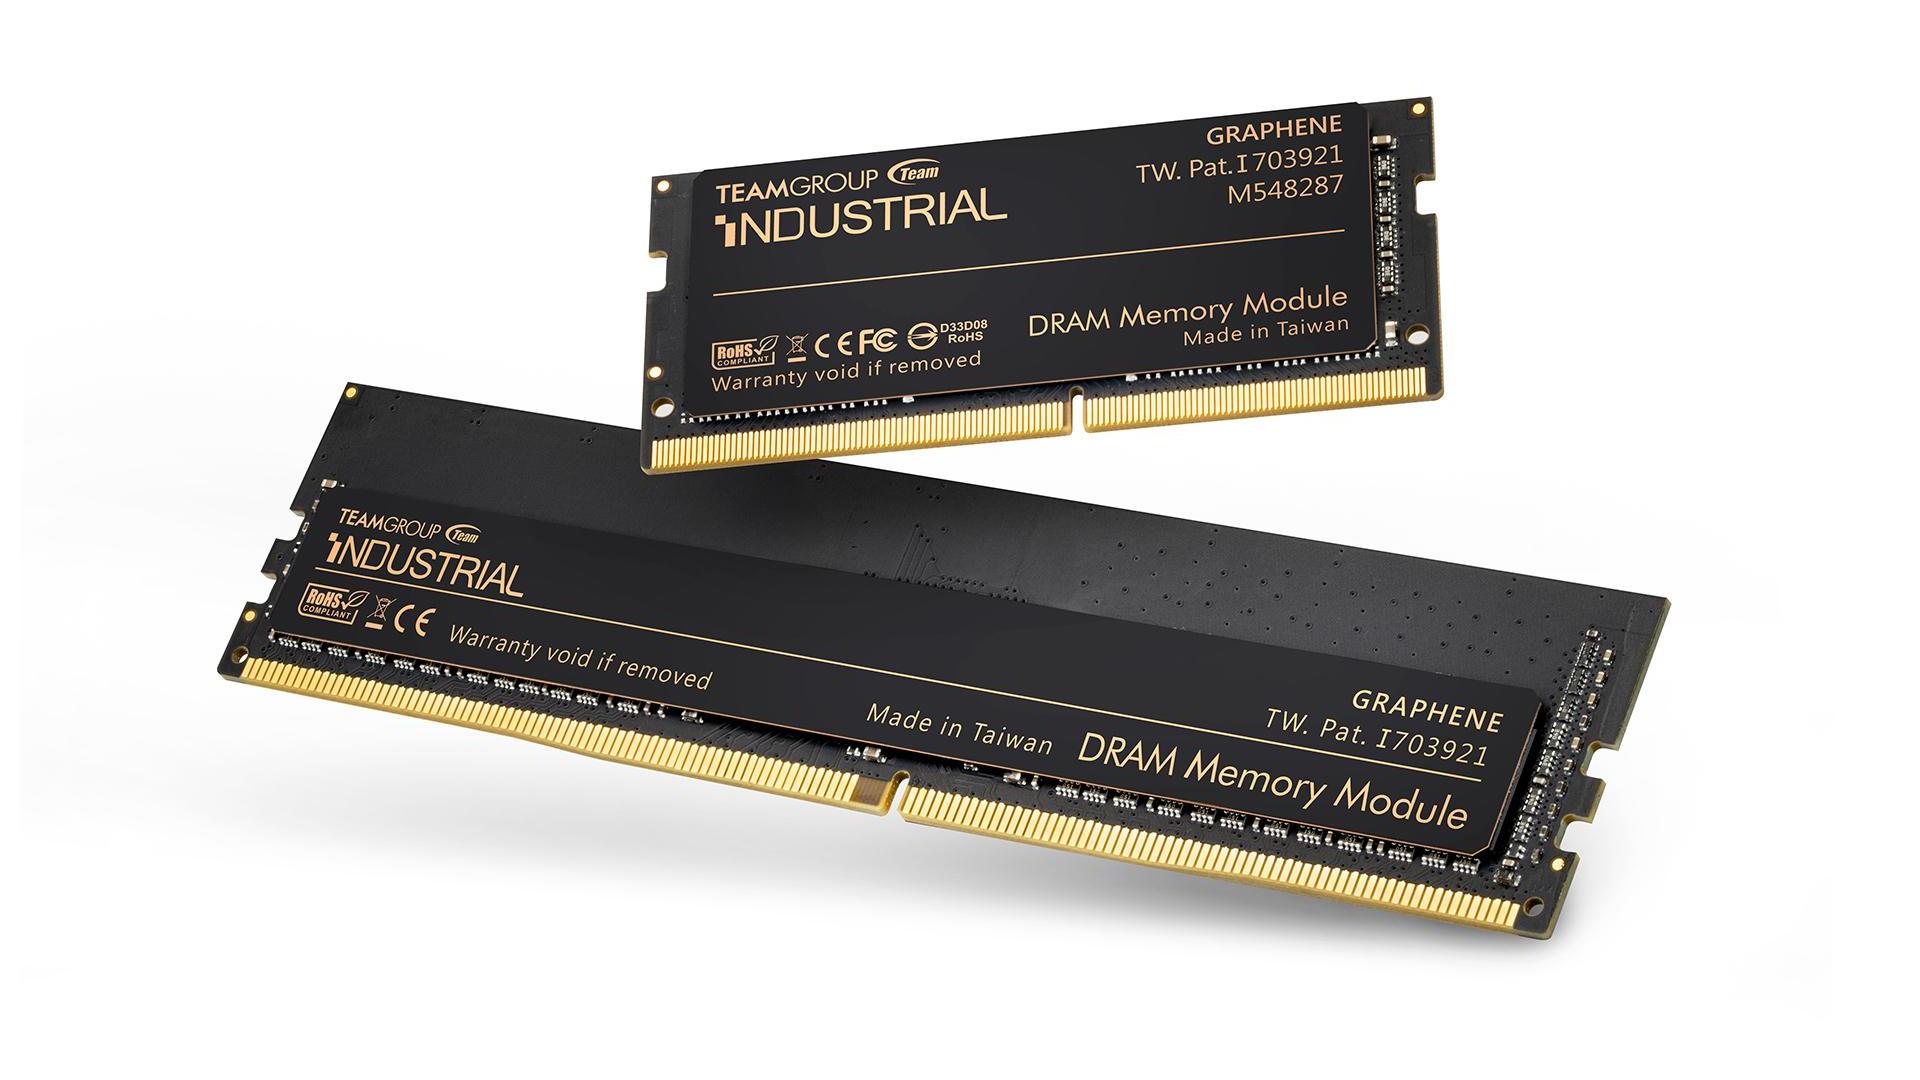 工業耐用型DDR4寬溫記憶體